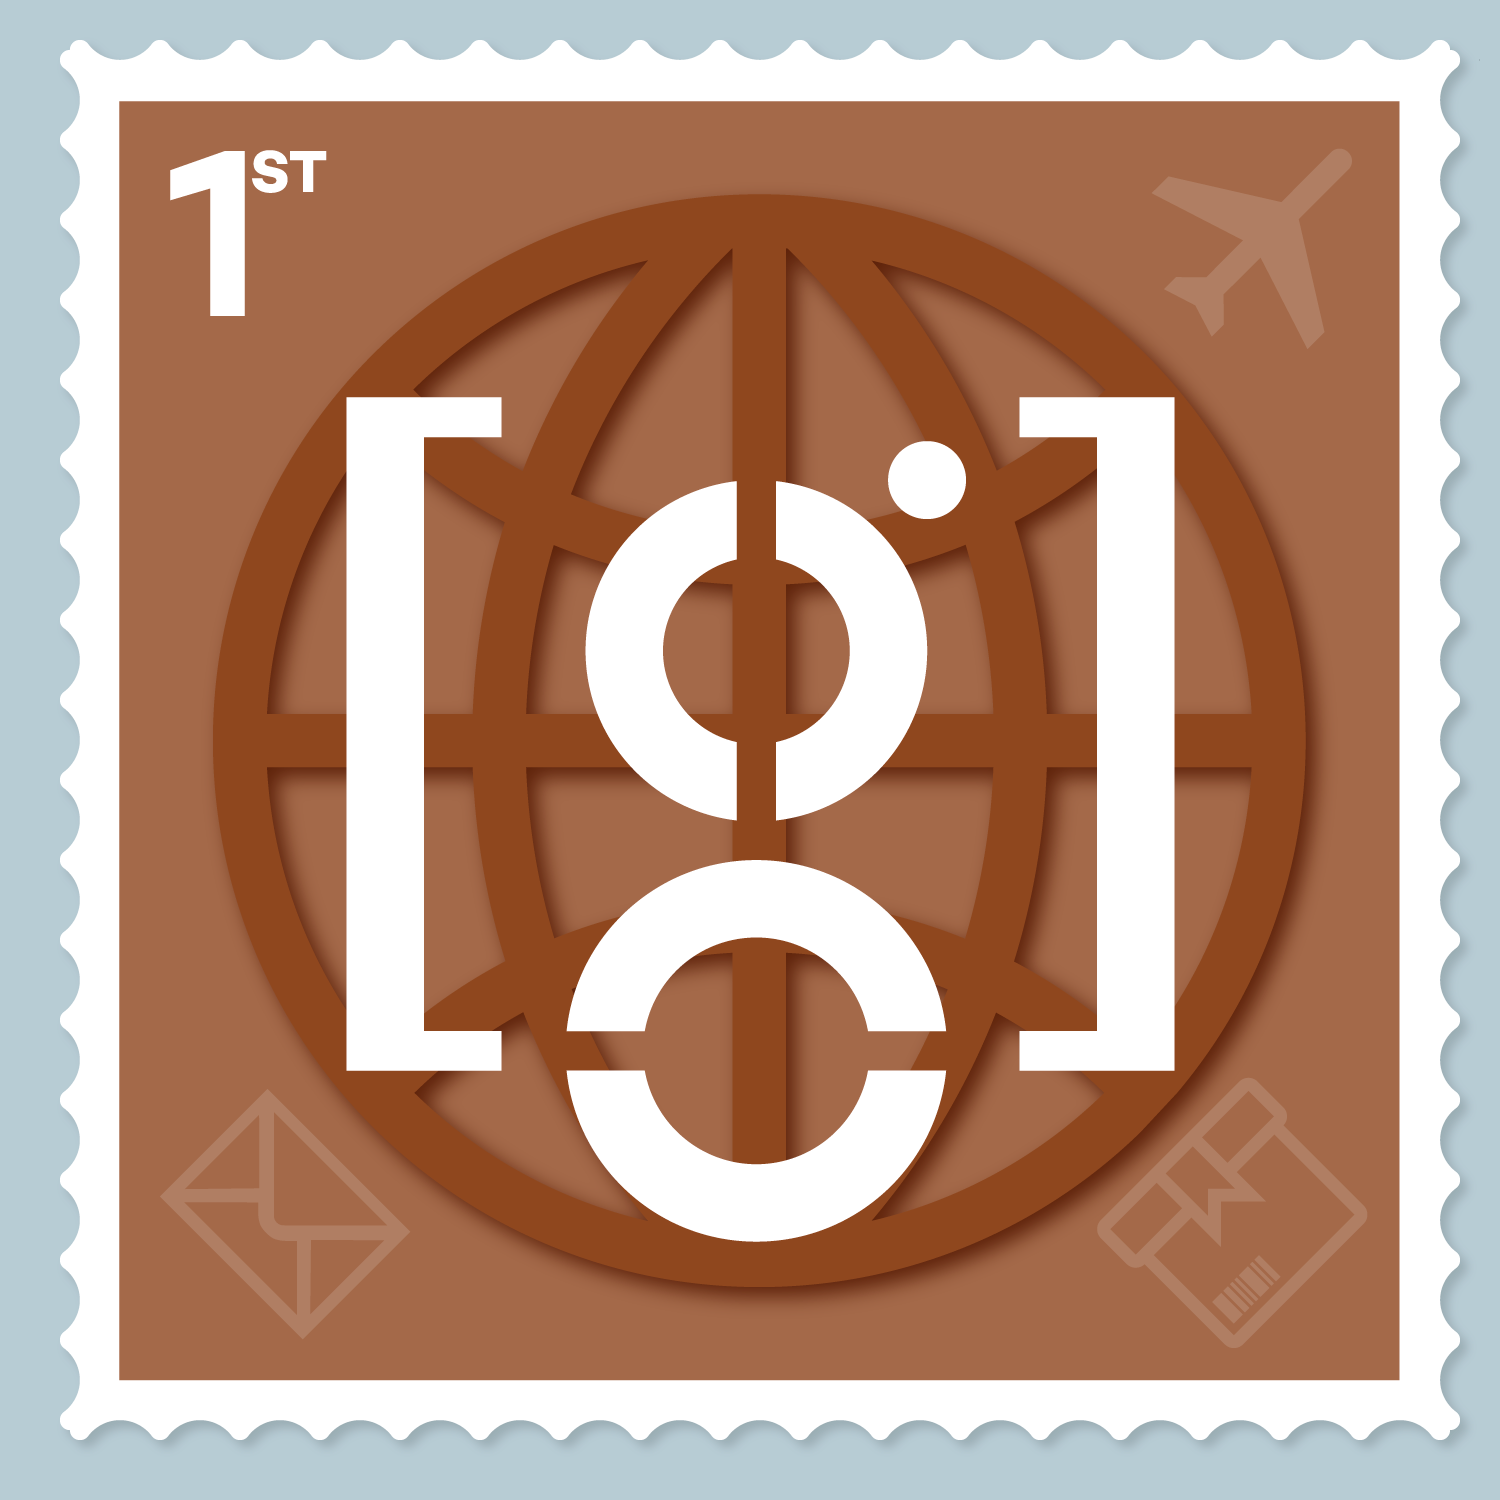 gawrjuhs-art-first-class-stamp-1500px